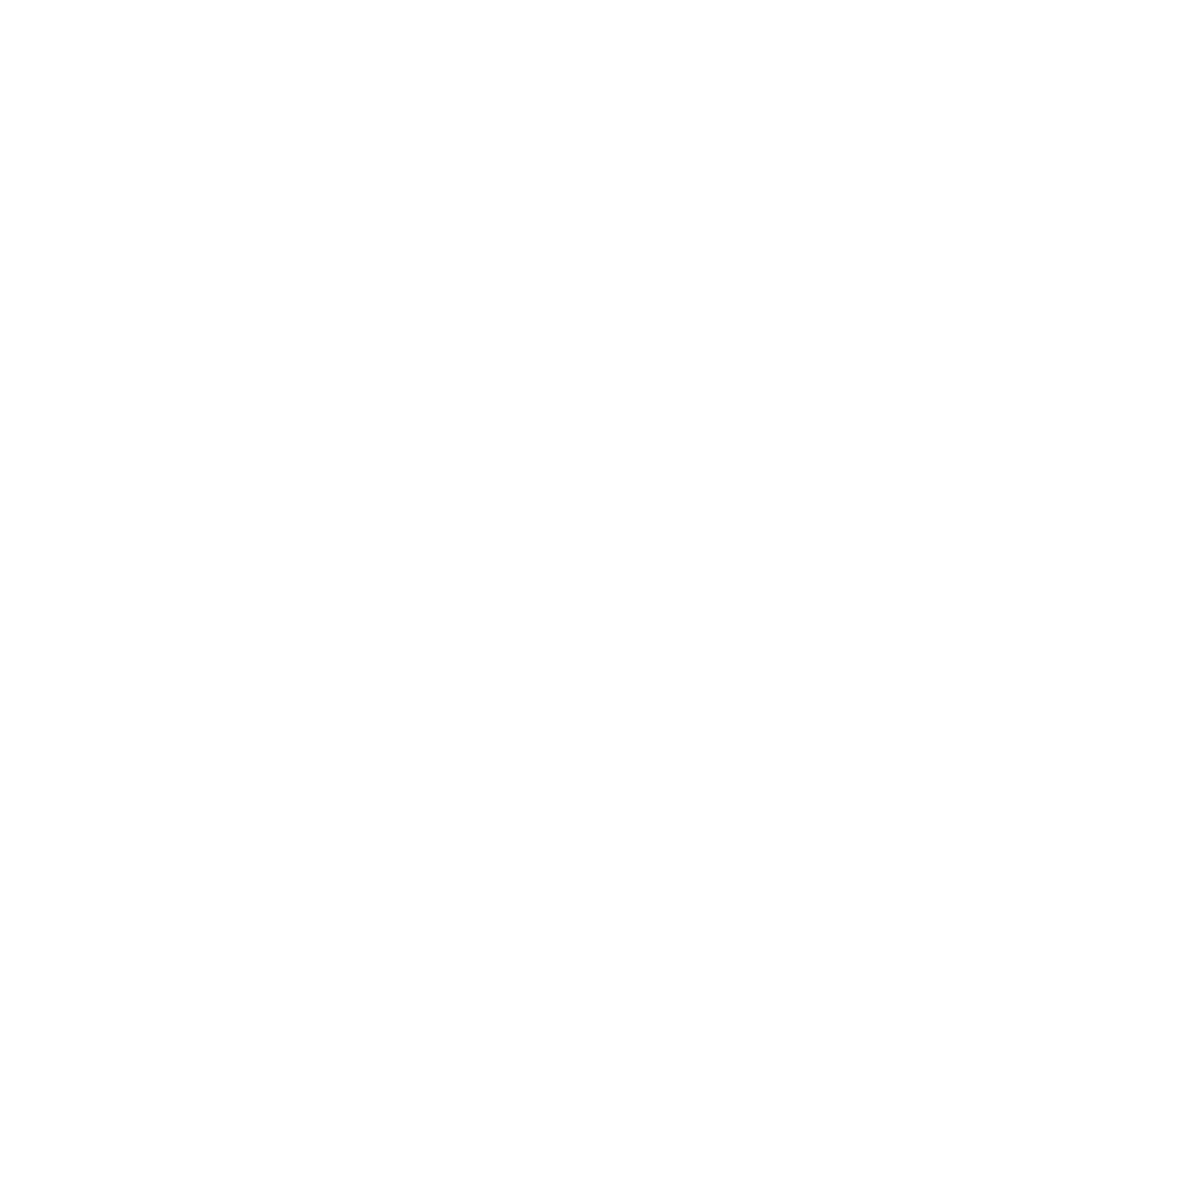 Energy efficient light globe icon